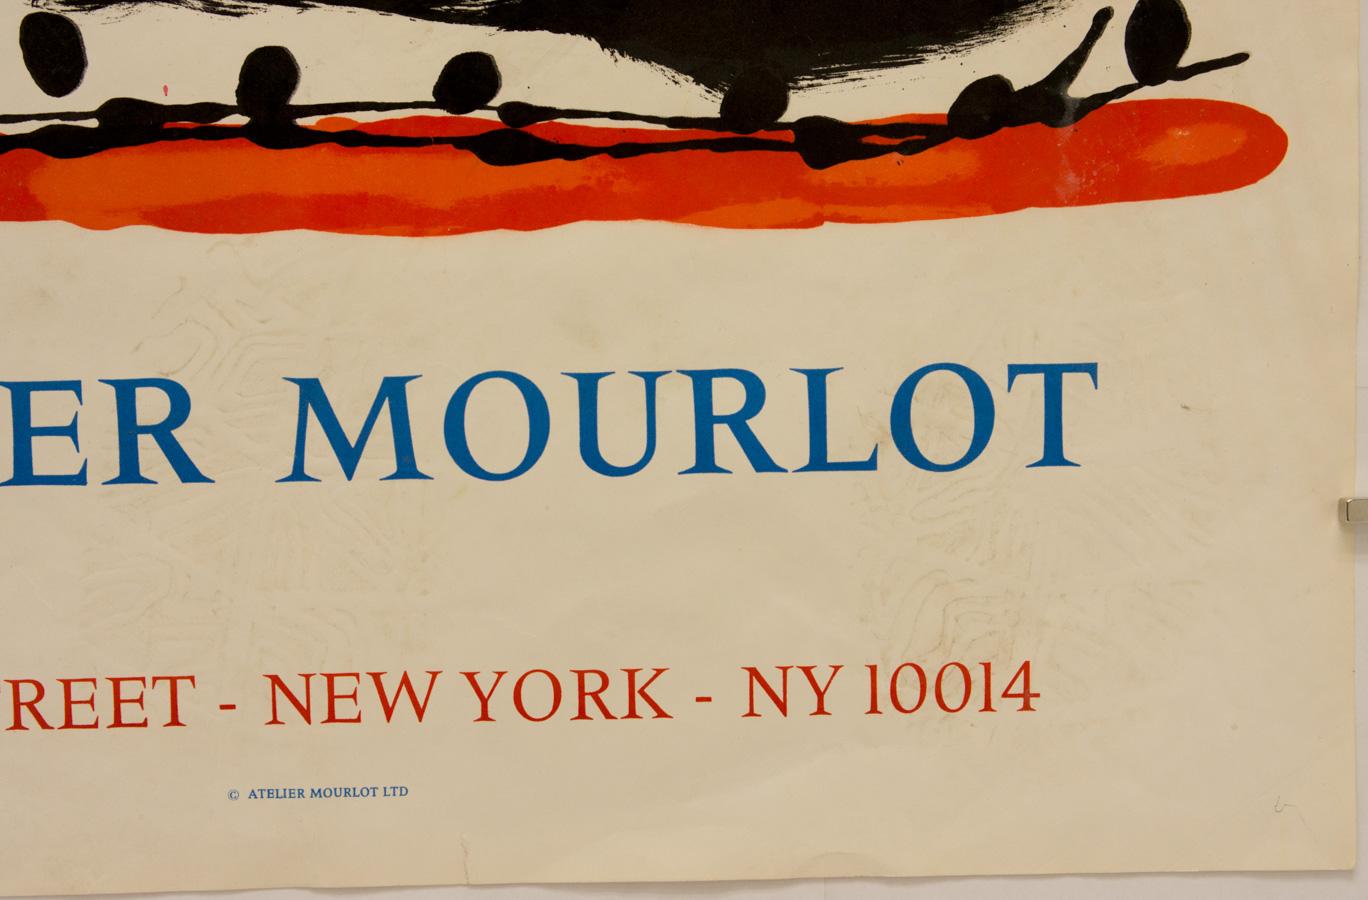 Imprimé par l'Atelier Mourlot en 1967 sur du papier Arches. L'affiche a été réalisée pour l'ouverture de l'atelier de l'imprimeur Fernand Mourlot à New York. Référence n° 29 de J. Corredor-Matheos, 